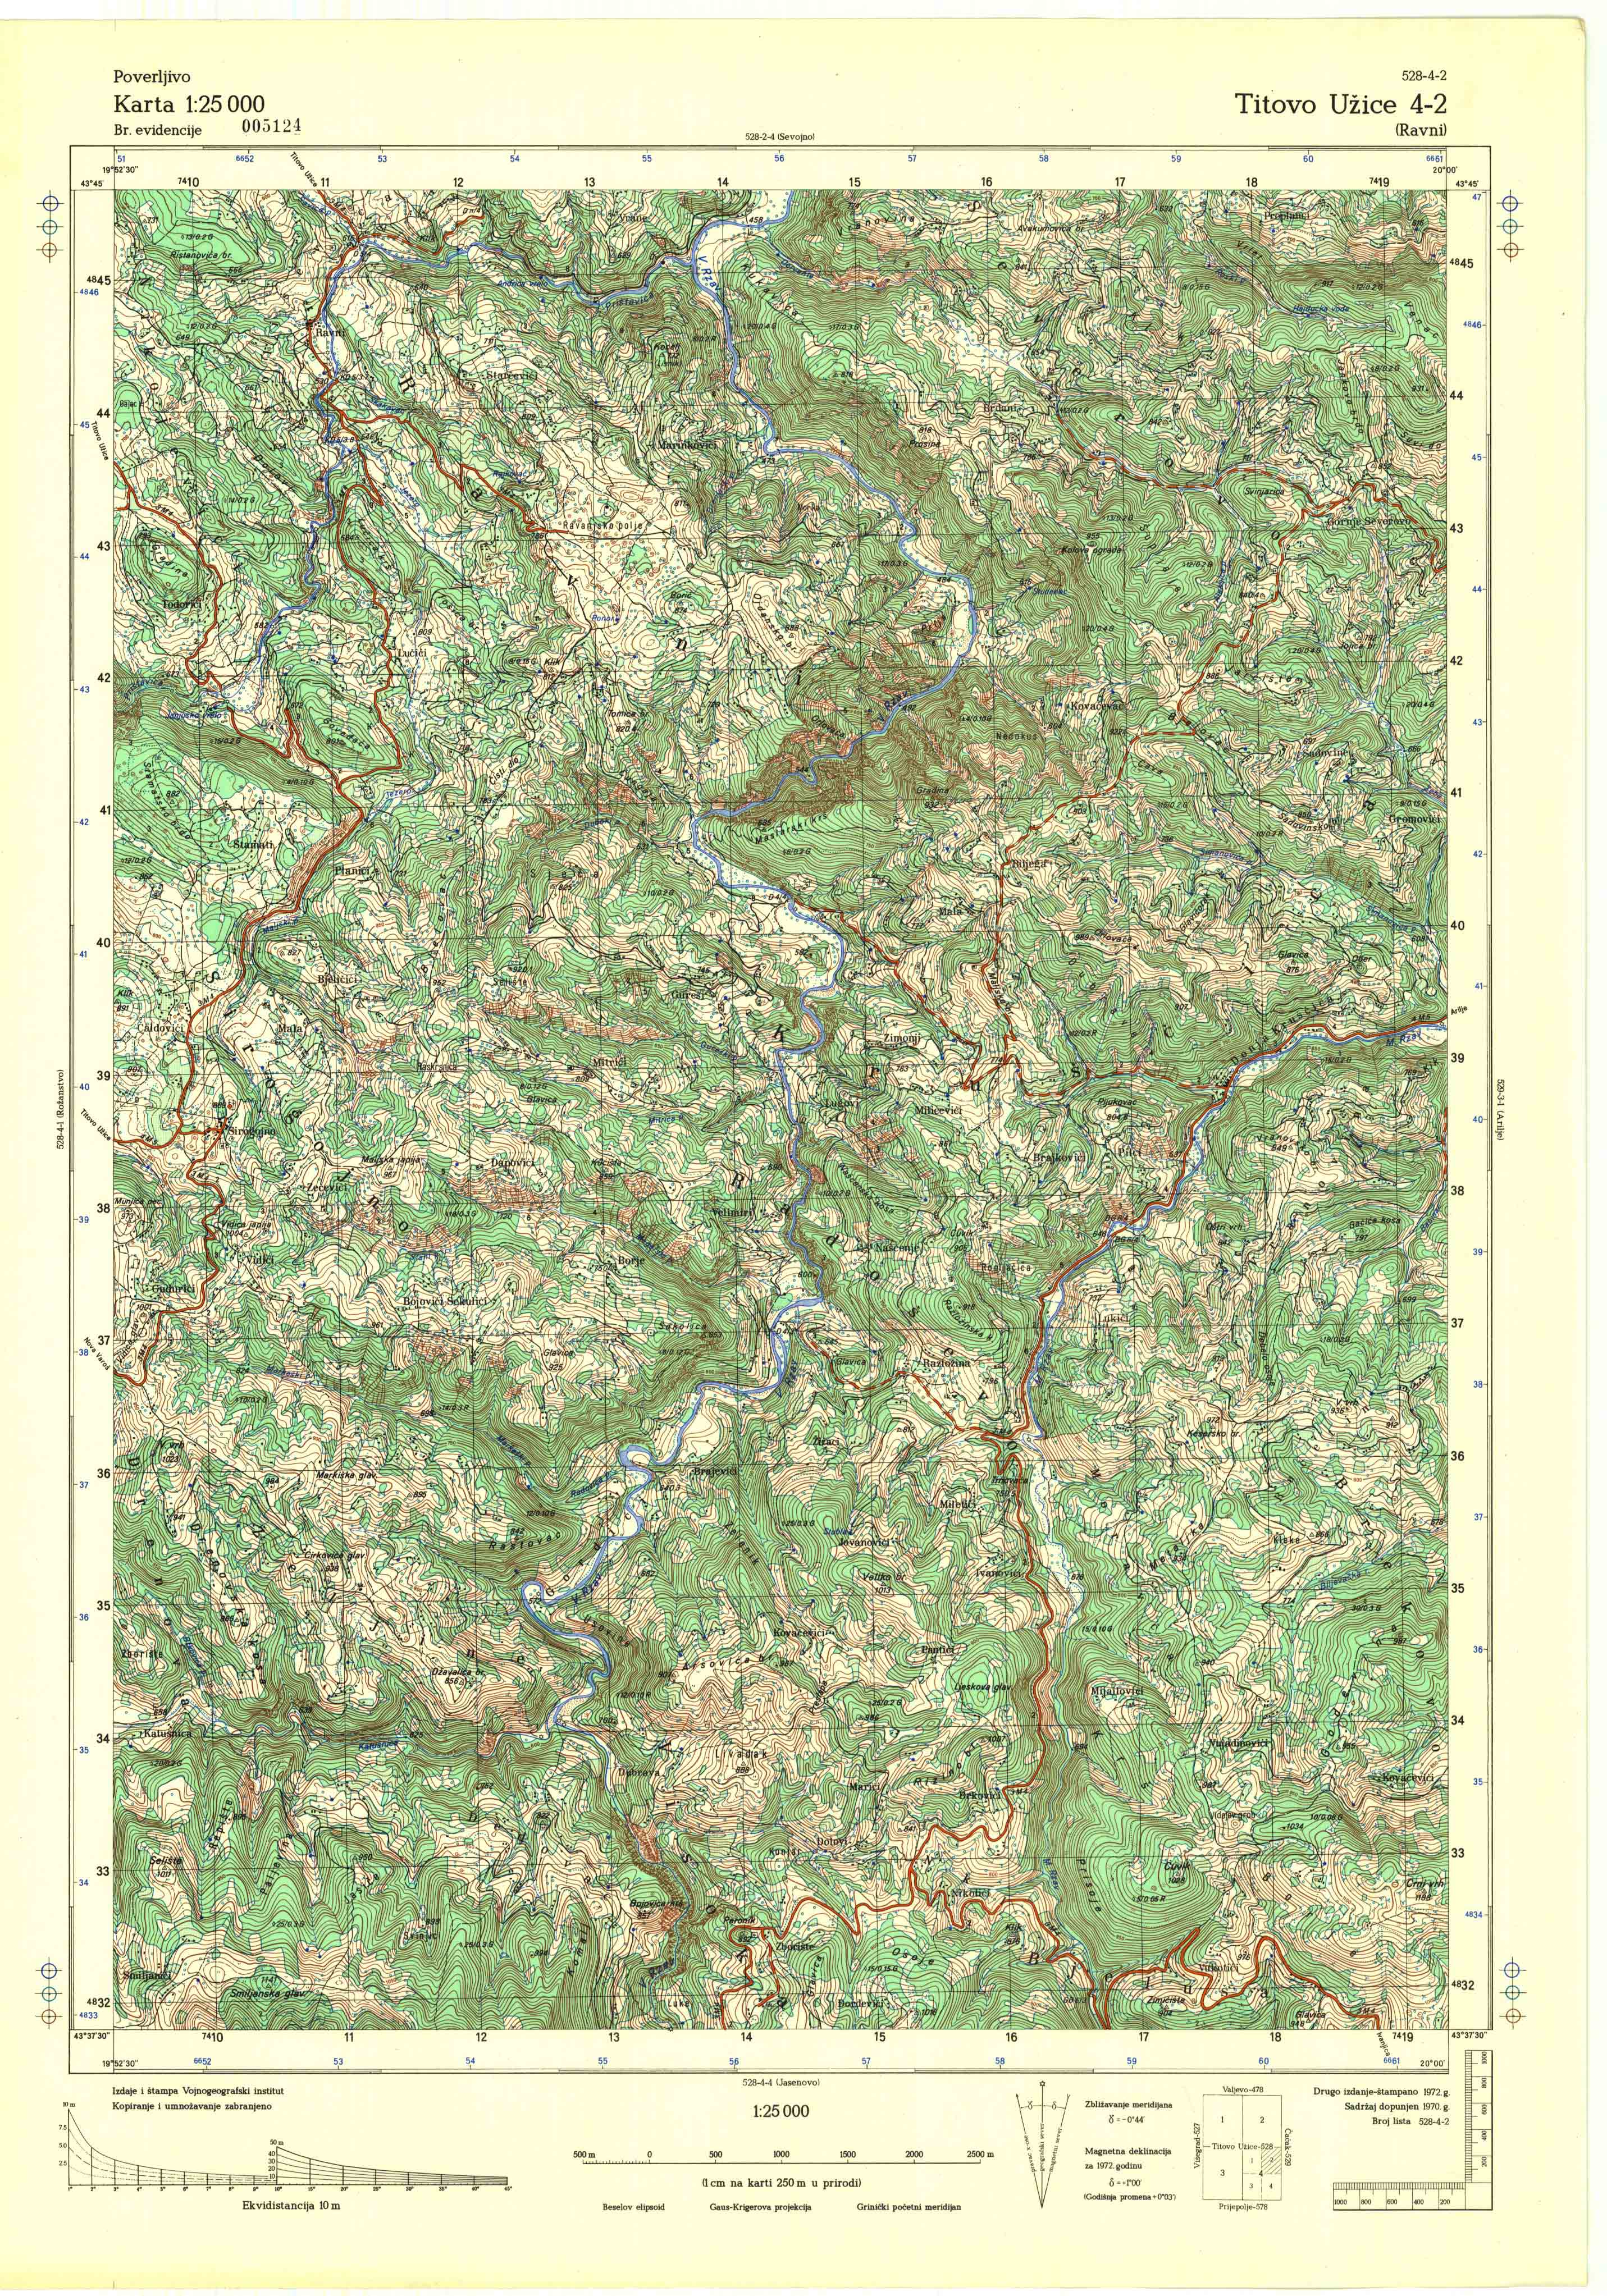  topografska karta srbije 25000 JNA  Užice